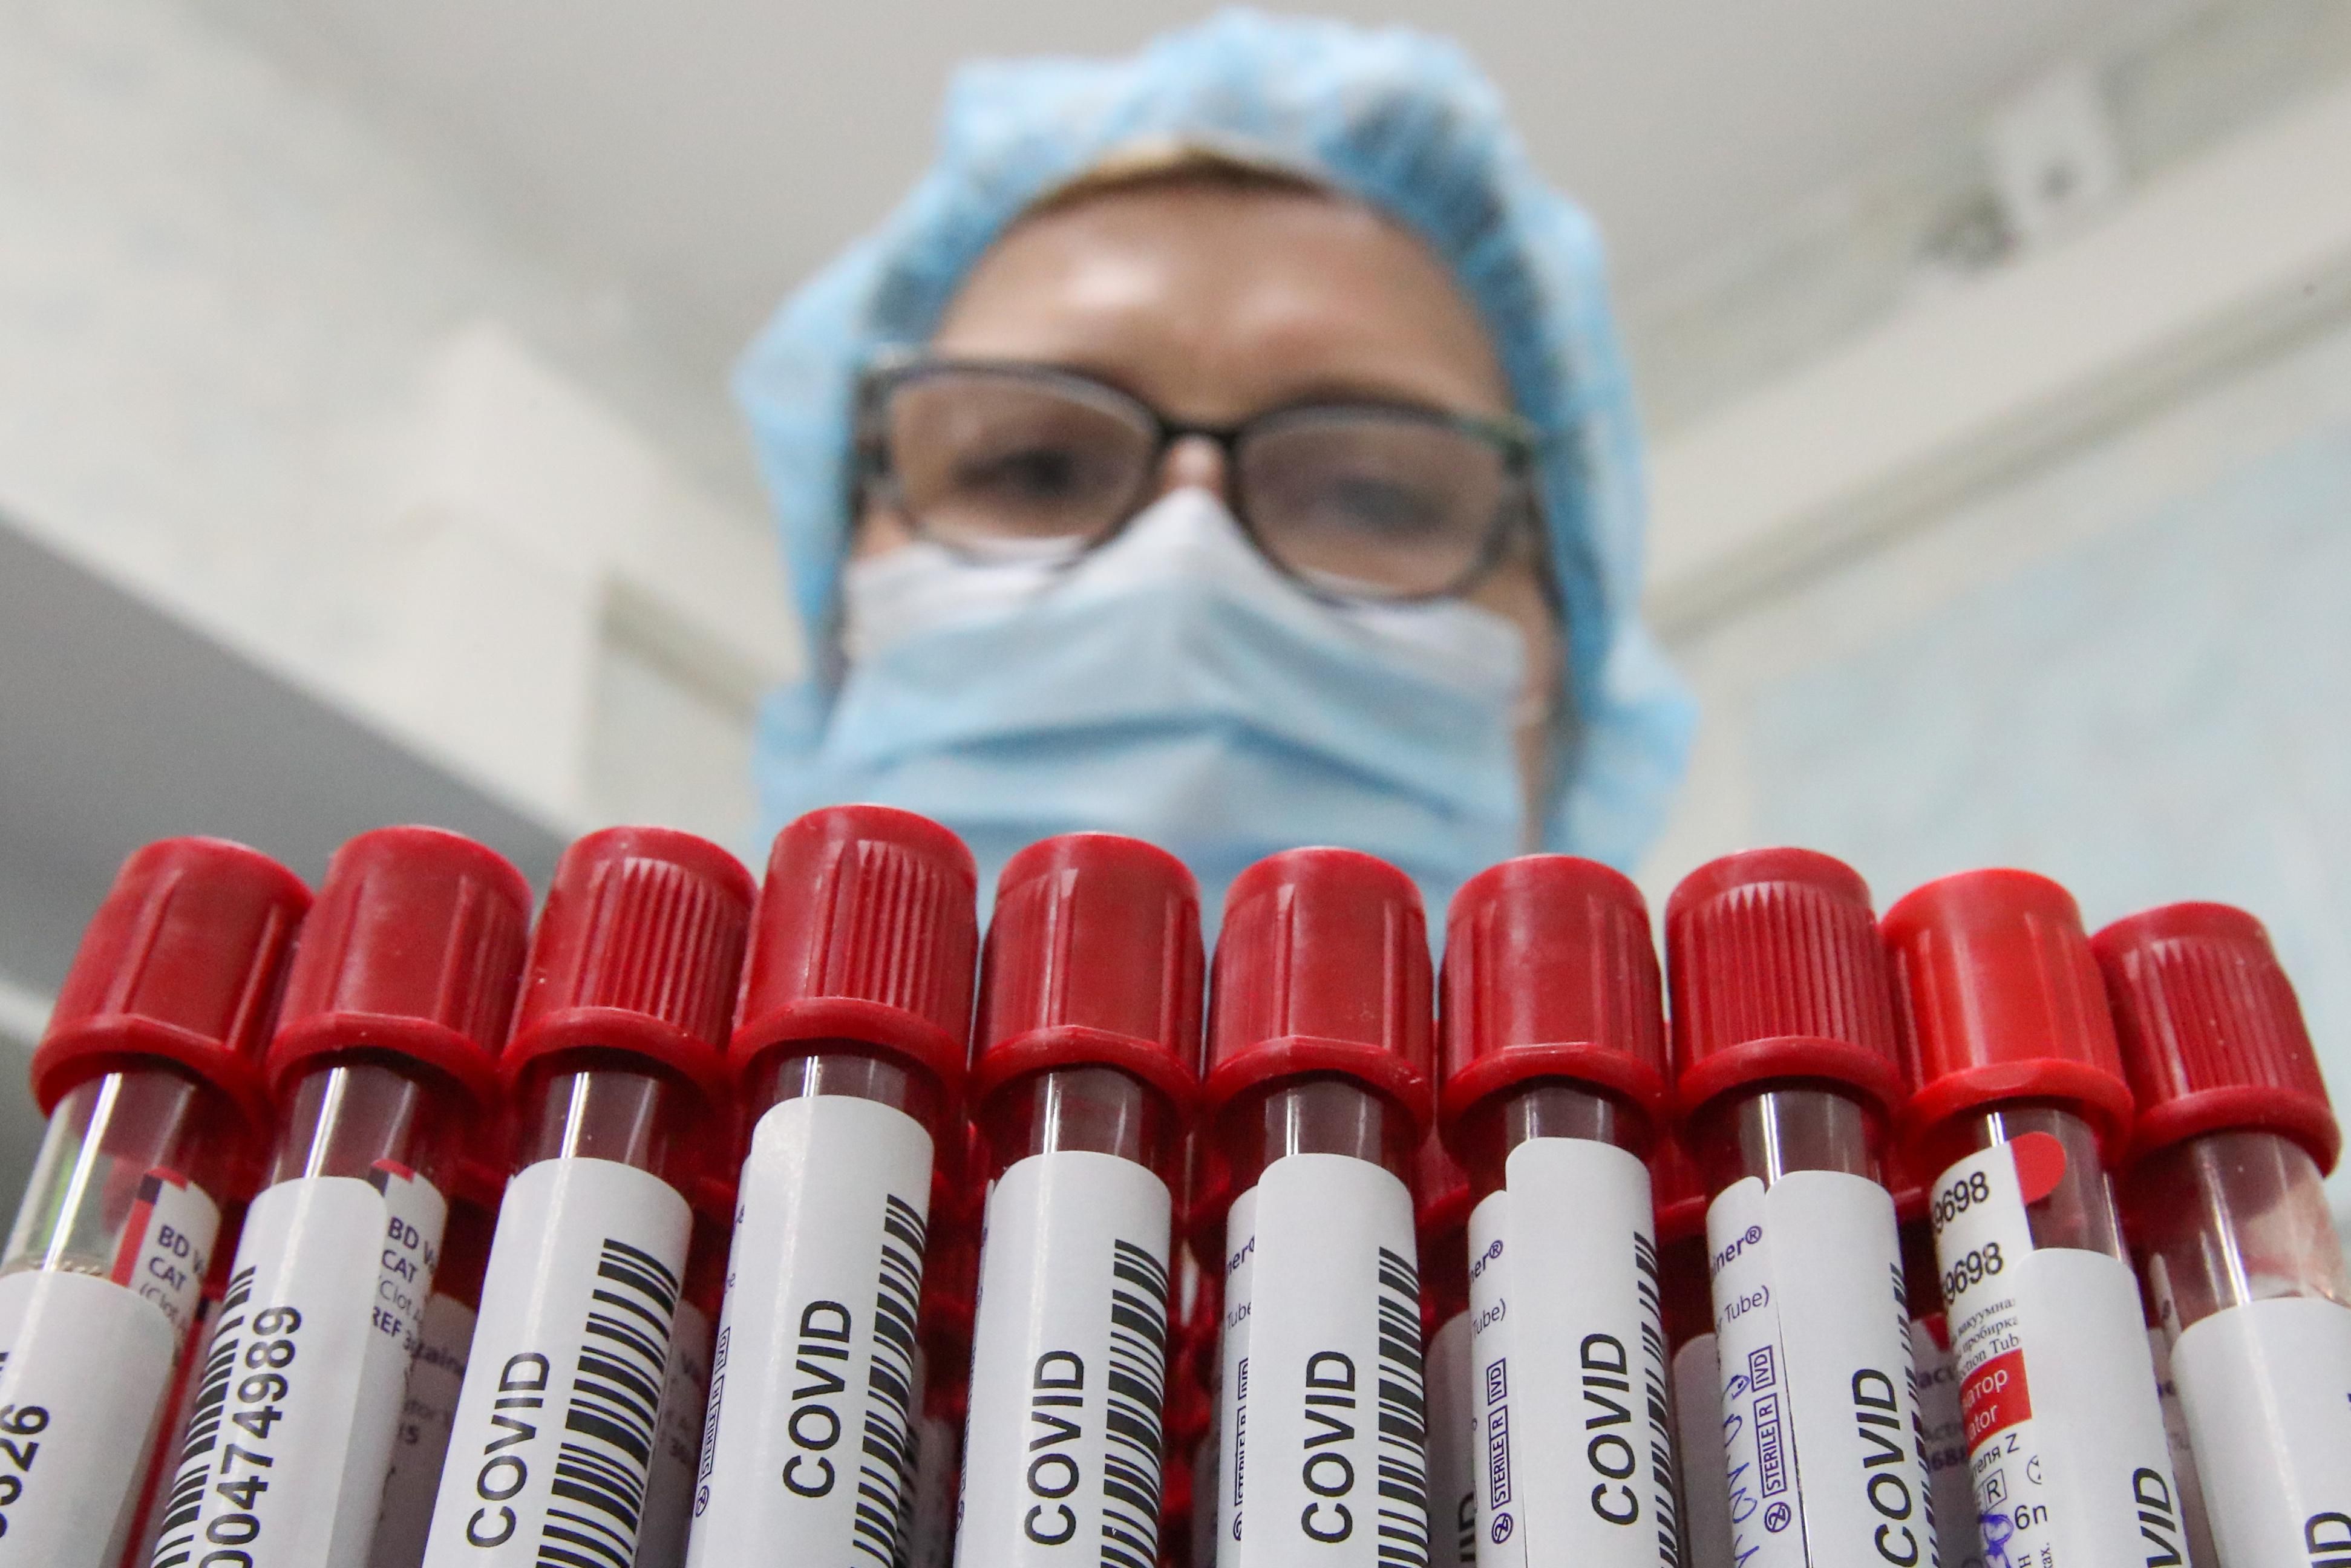 Лечение антителами могло спасти тысячи украинцев, – ученый о COVID-19